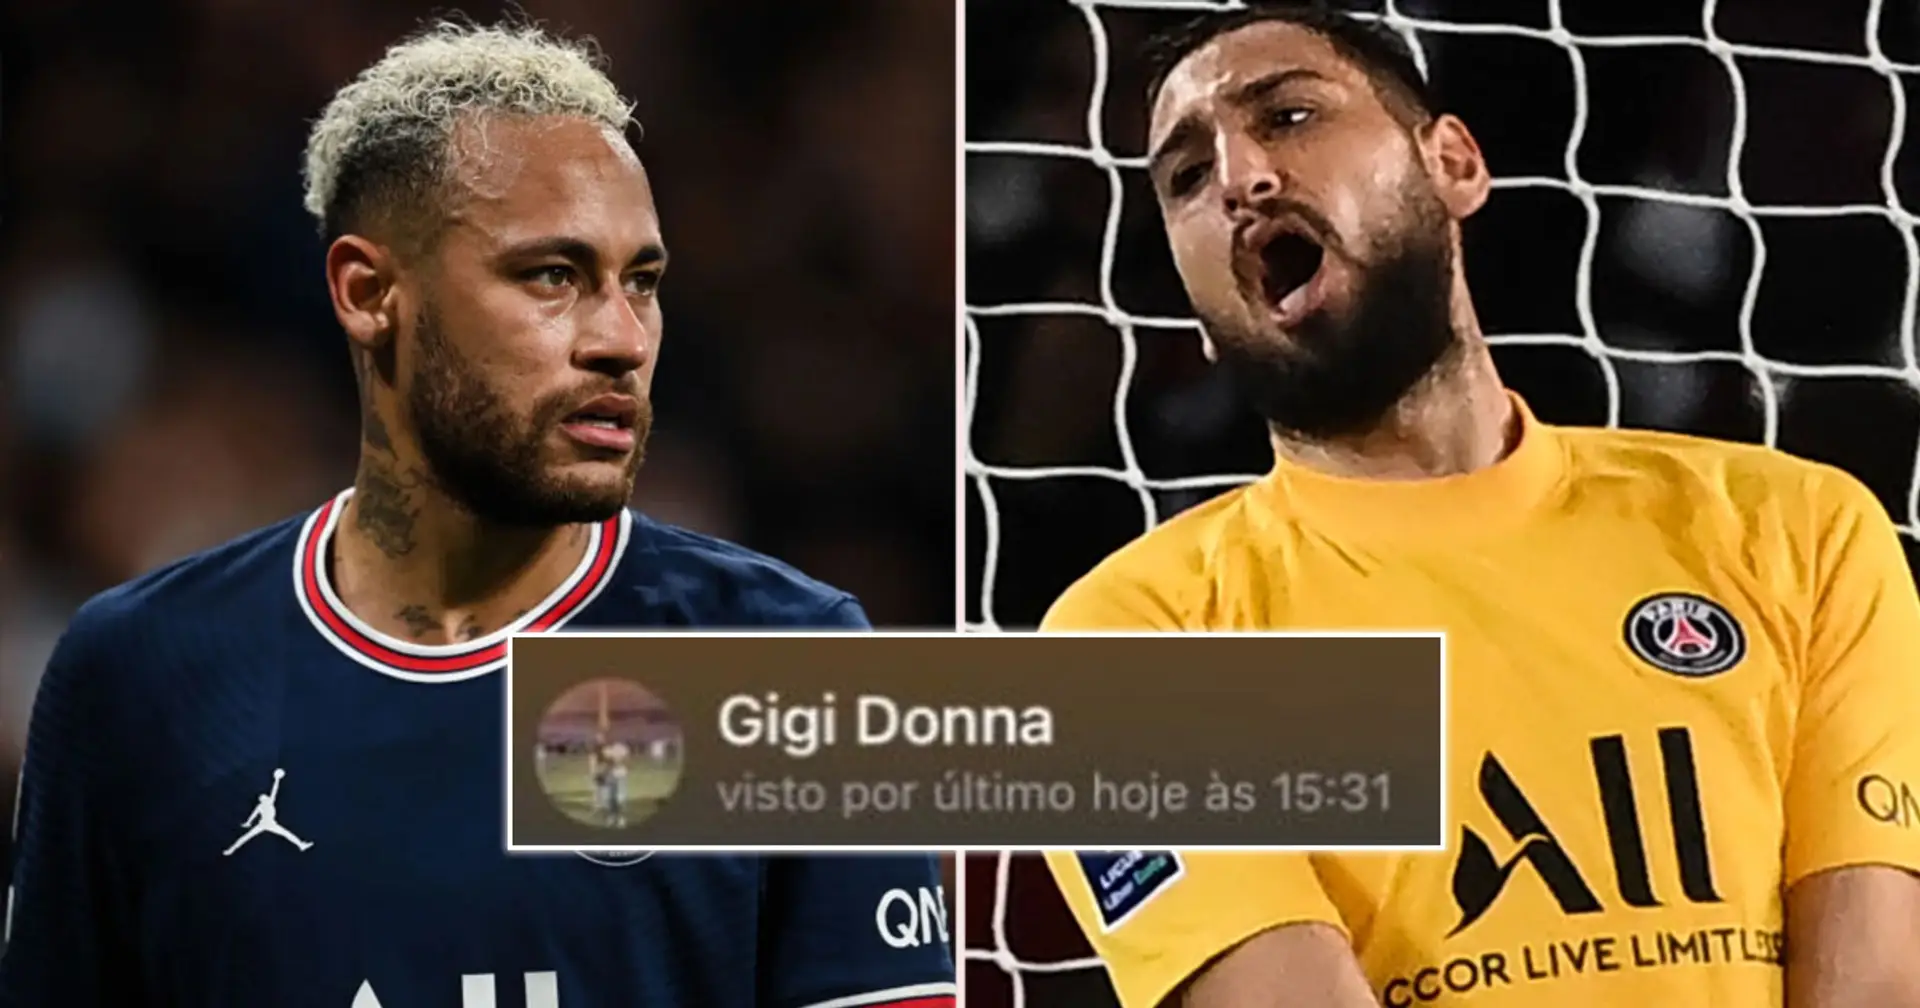 Neymar enthüllt ein privates Gespräch mit Gianluigi Donnarumma inmitten eines angeblichen "Streits" nach der Niederlage gegen Real Madrid